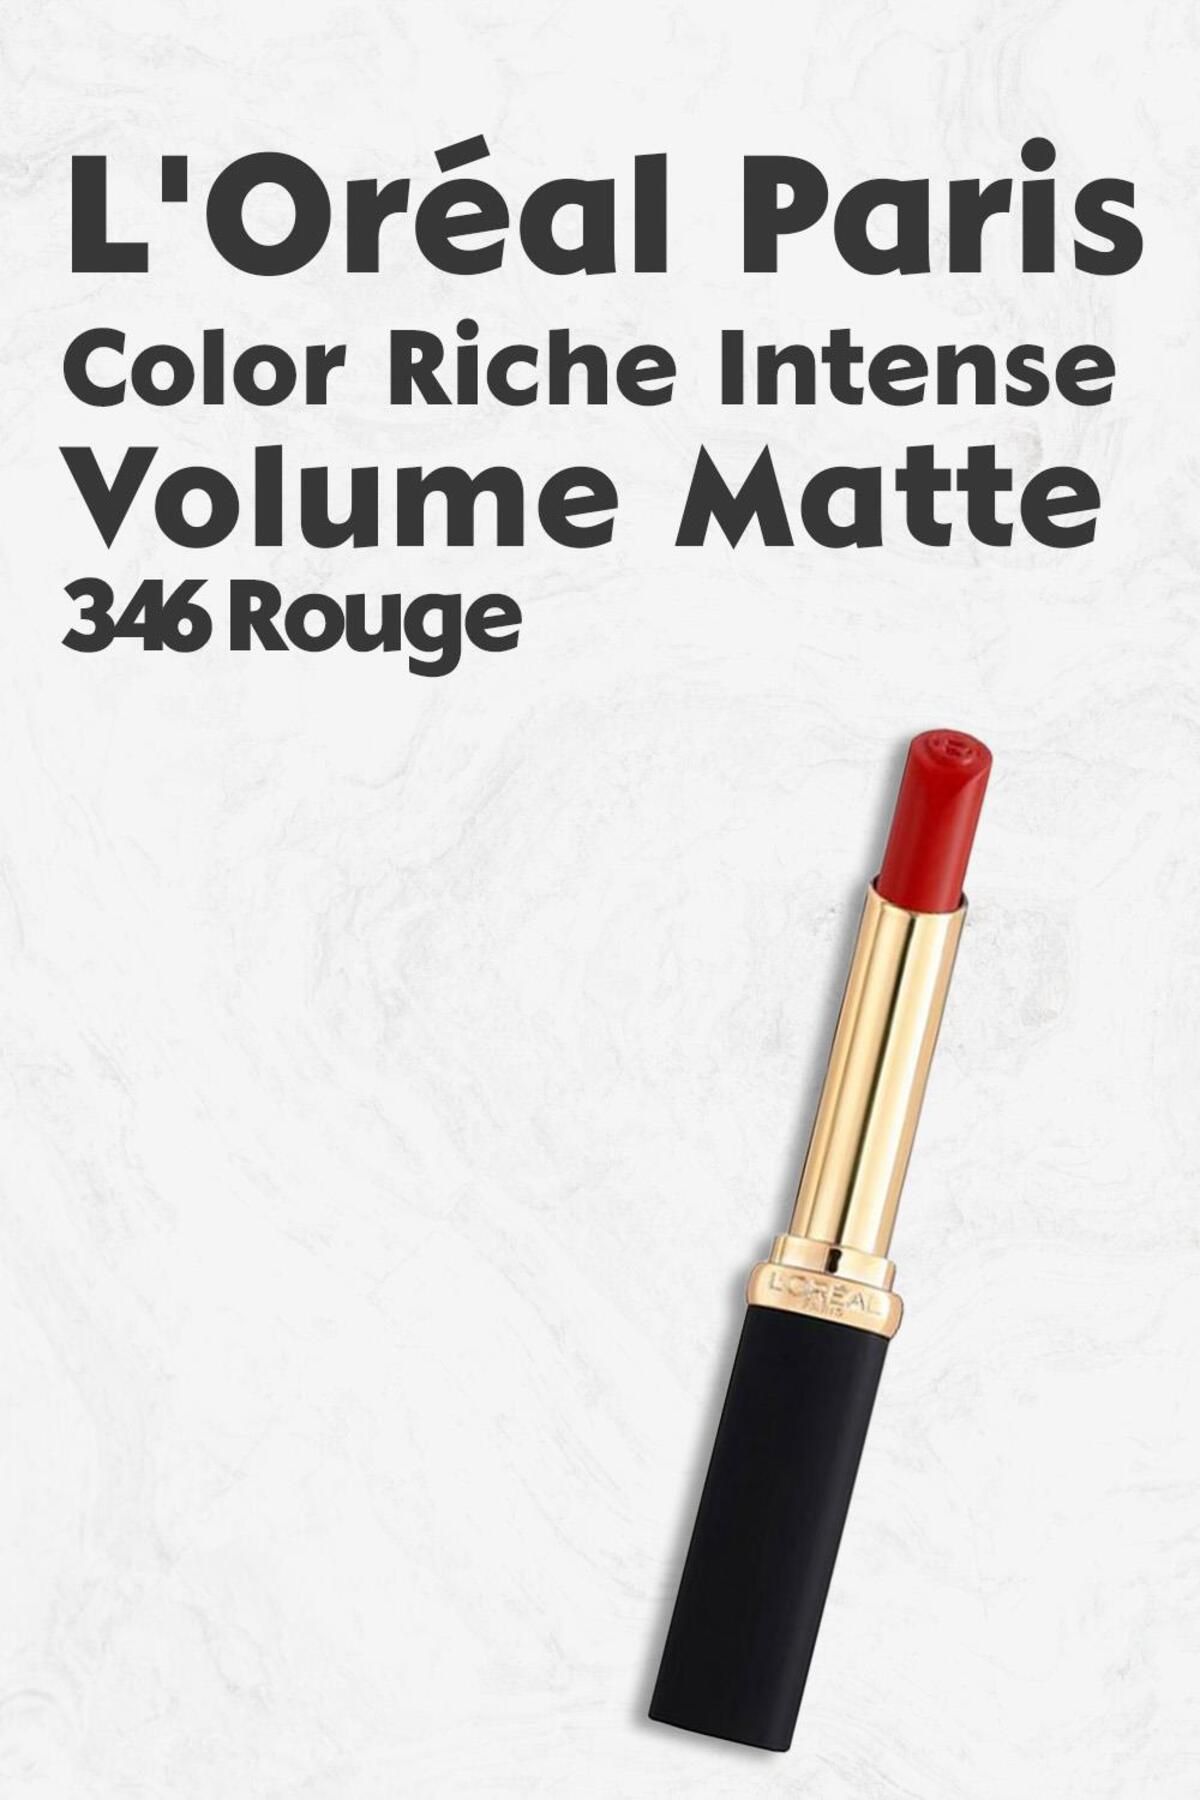 L'Oreal Paris Loreal Paris Color Riche Intense Volume Matte - 346 Rouge Determination